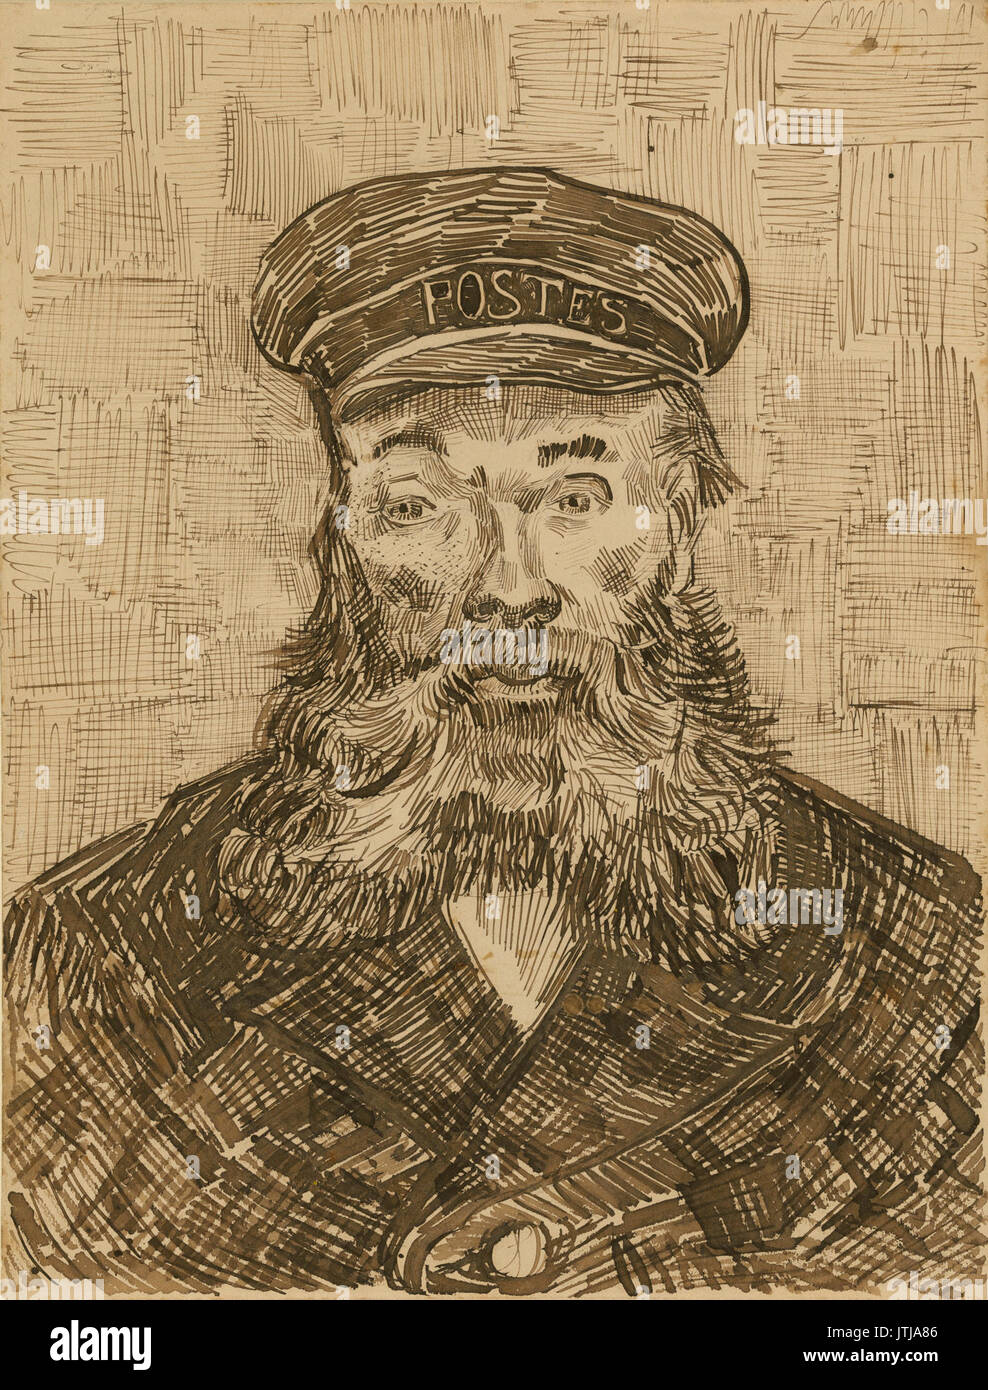 Retrato del cartero Joseph Roulin (1888) van Gogh Getty Foto de stock